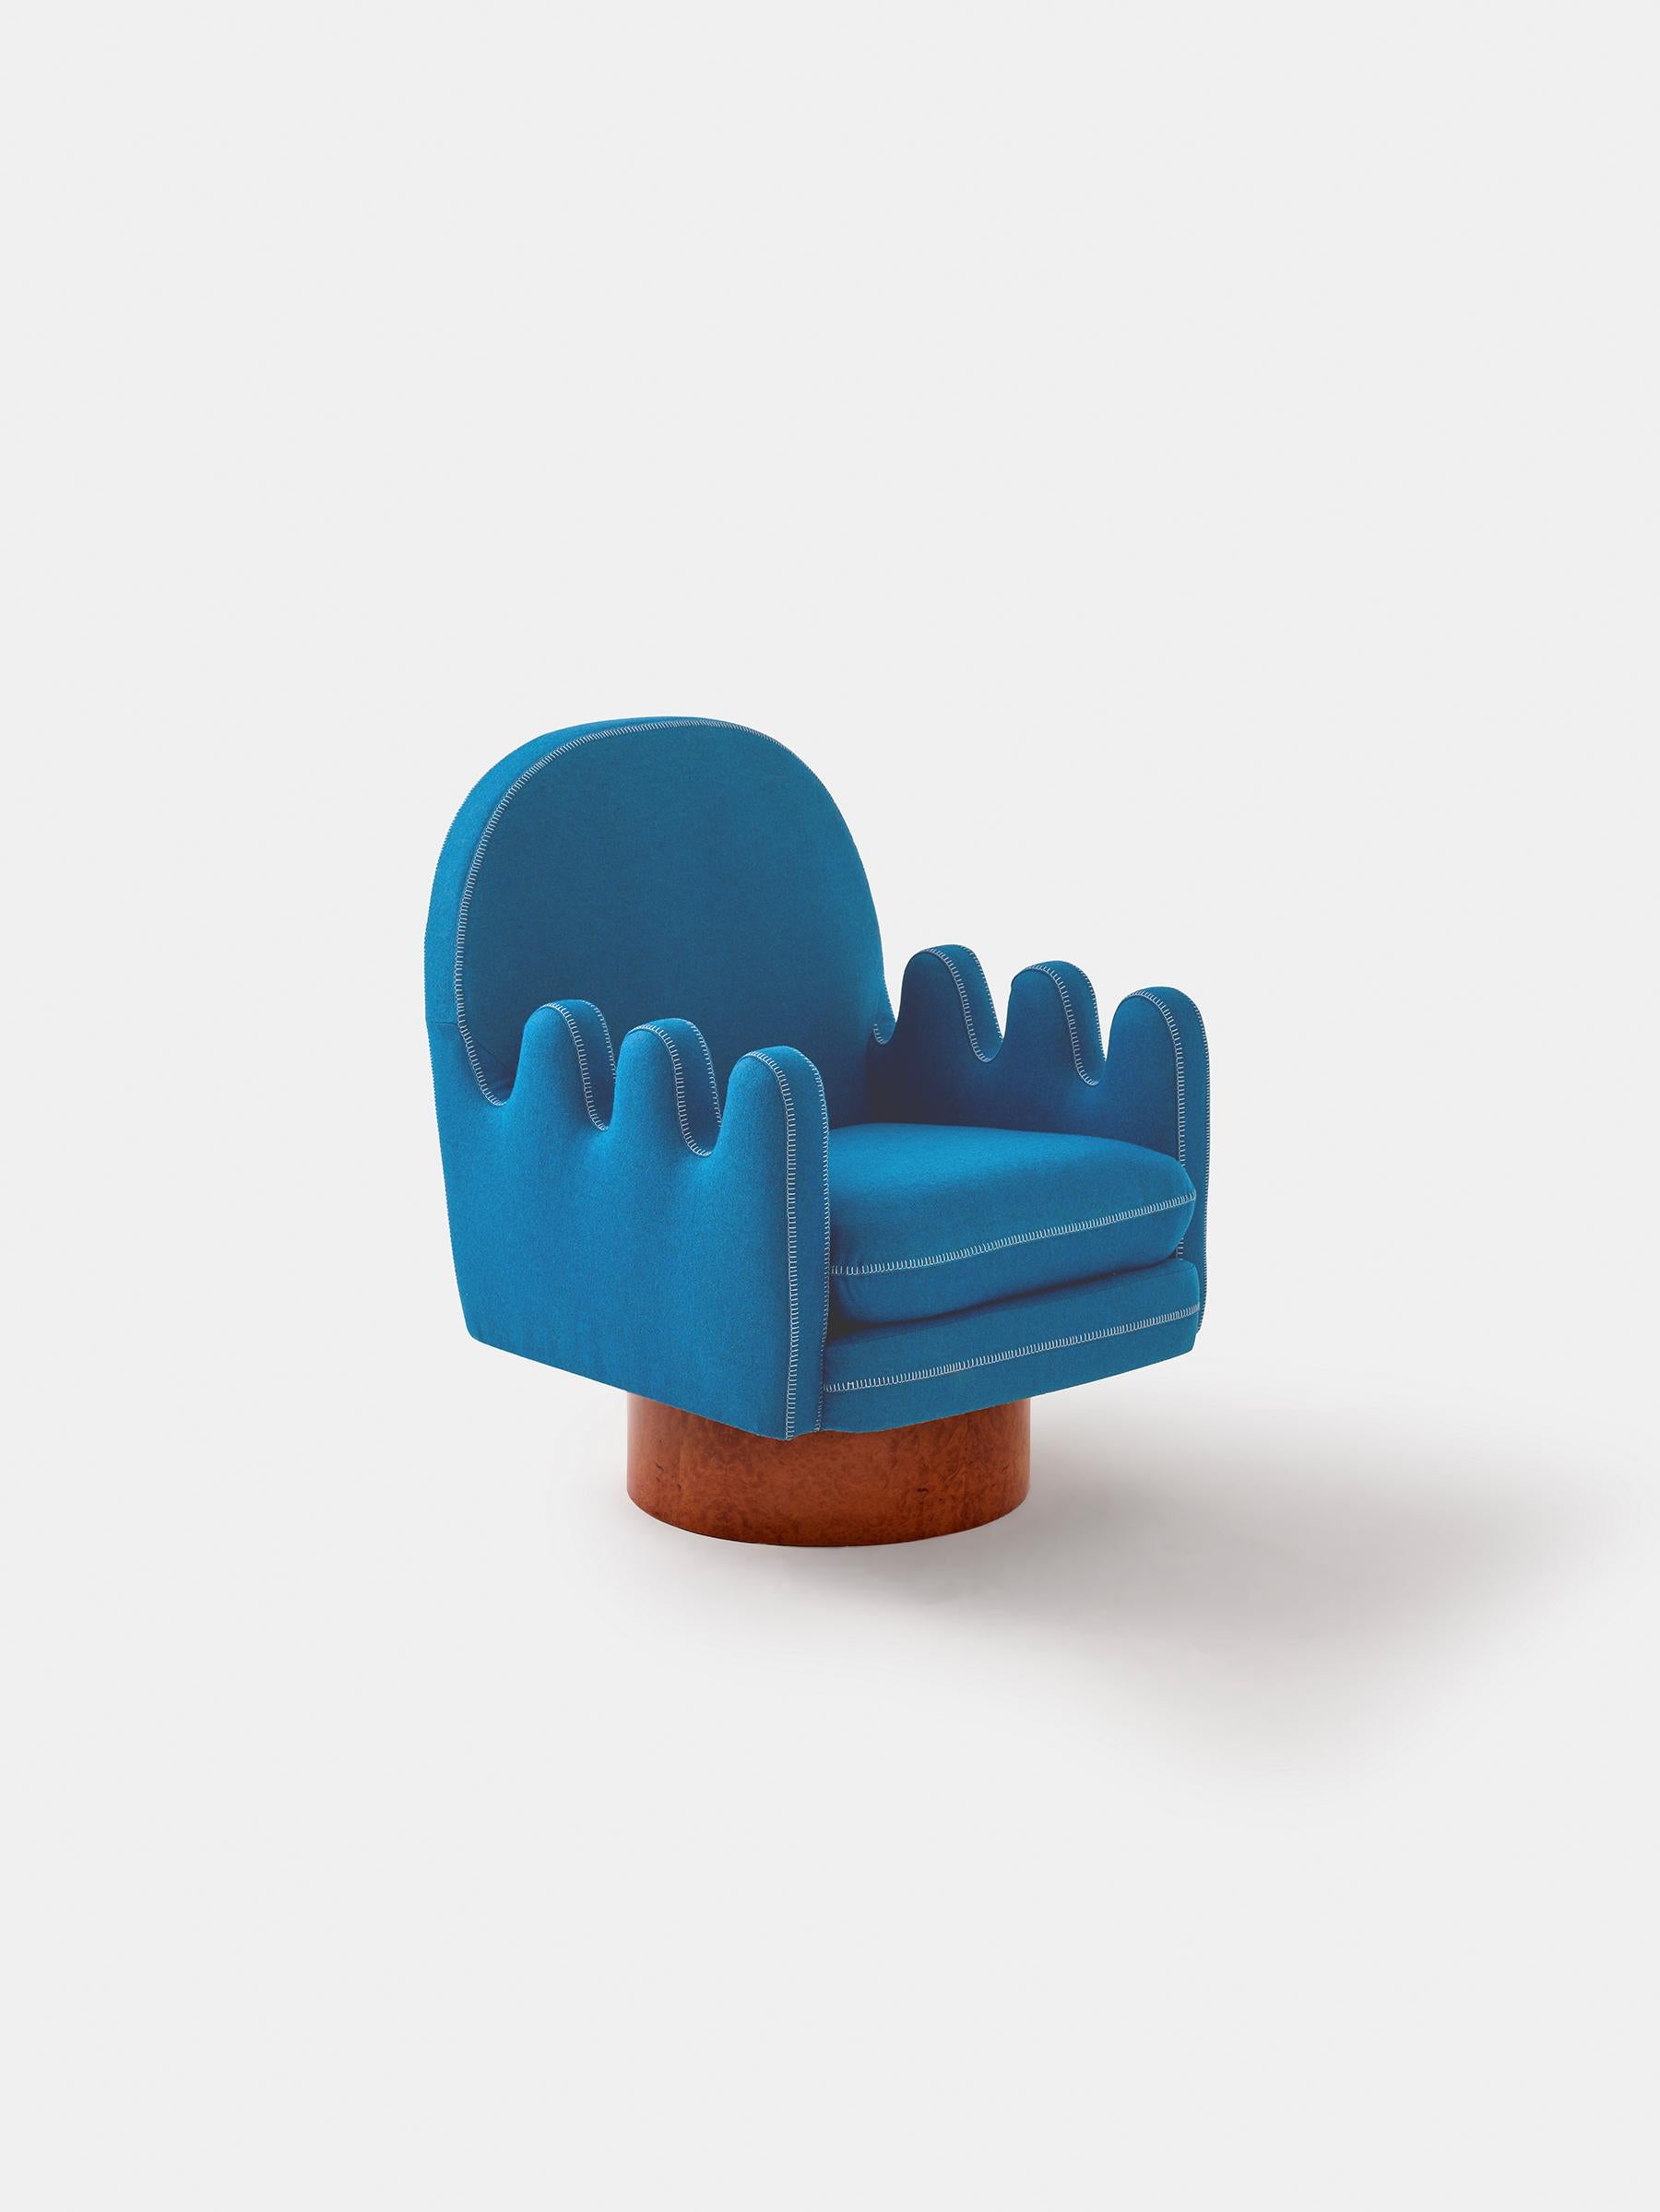 SEMO ist der perfekte Sessel für den ultimativen Seitensitzer und für alle, die sich gerne drehen. Die dicken Fingerarme sind großartig, um die Beine zu platzieren, während man sich nach links und rechts dreht. Semo ähnelt einem weichen